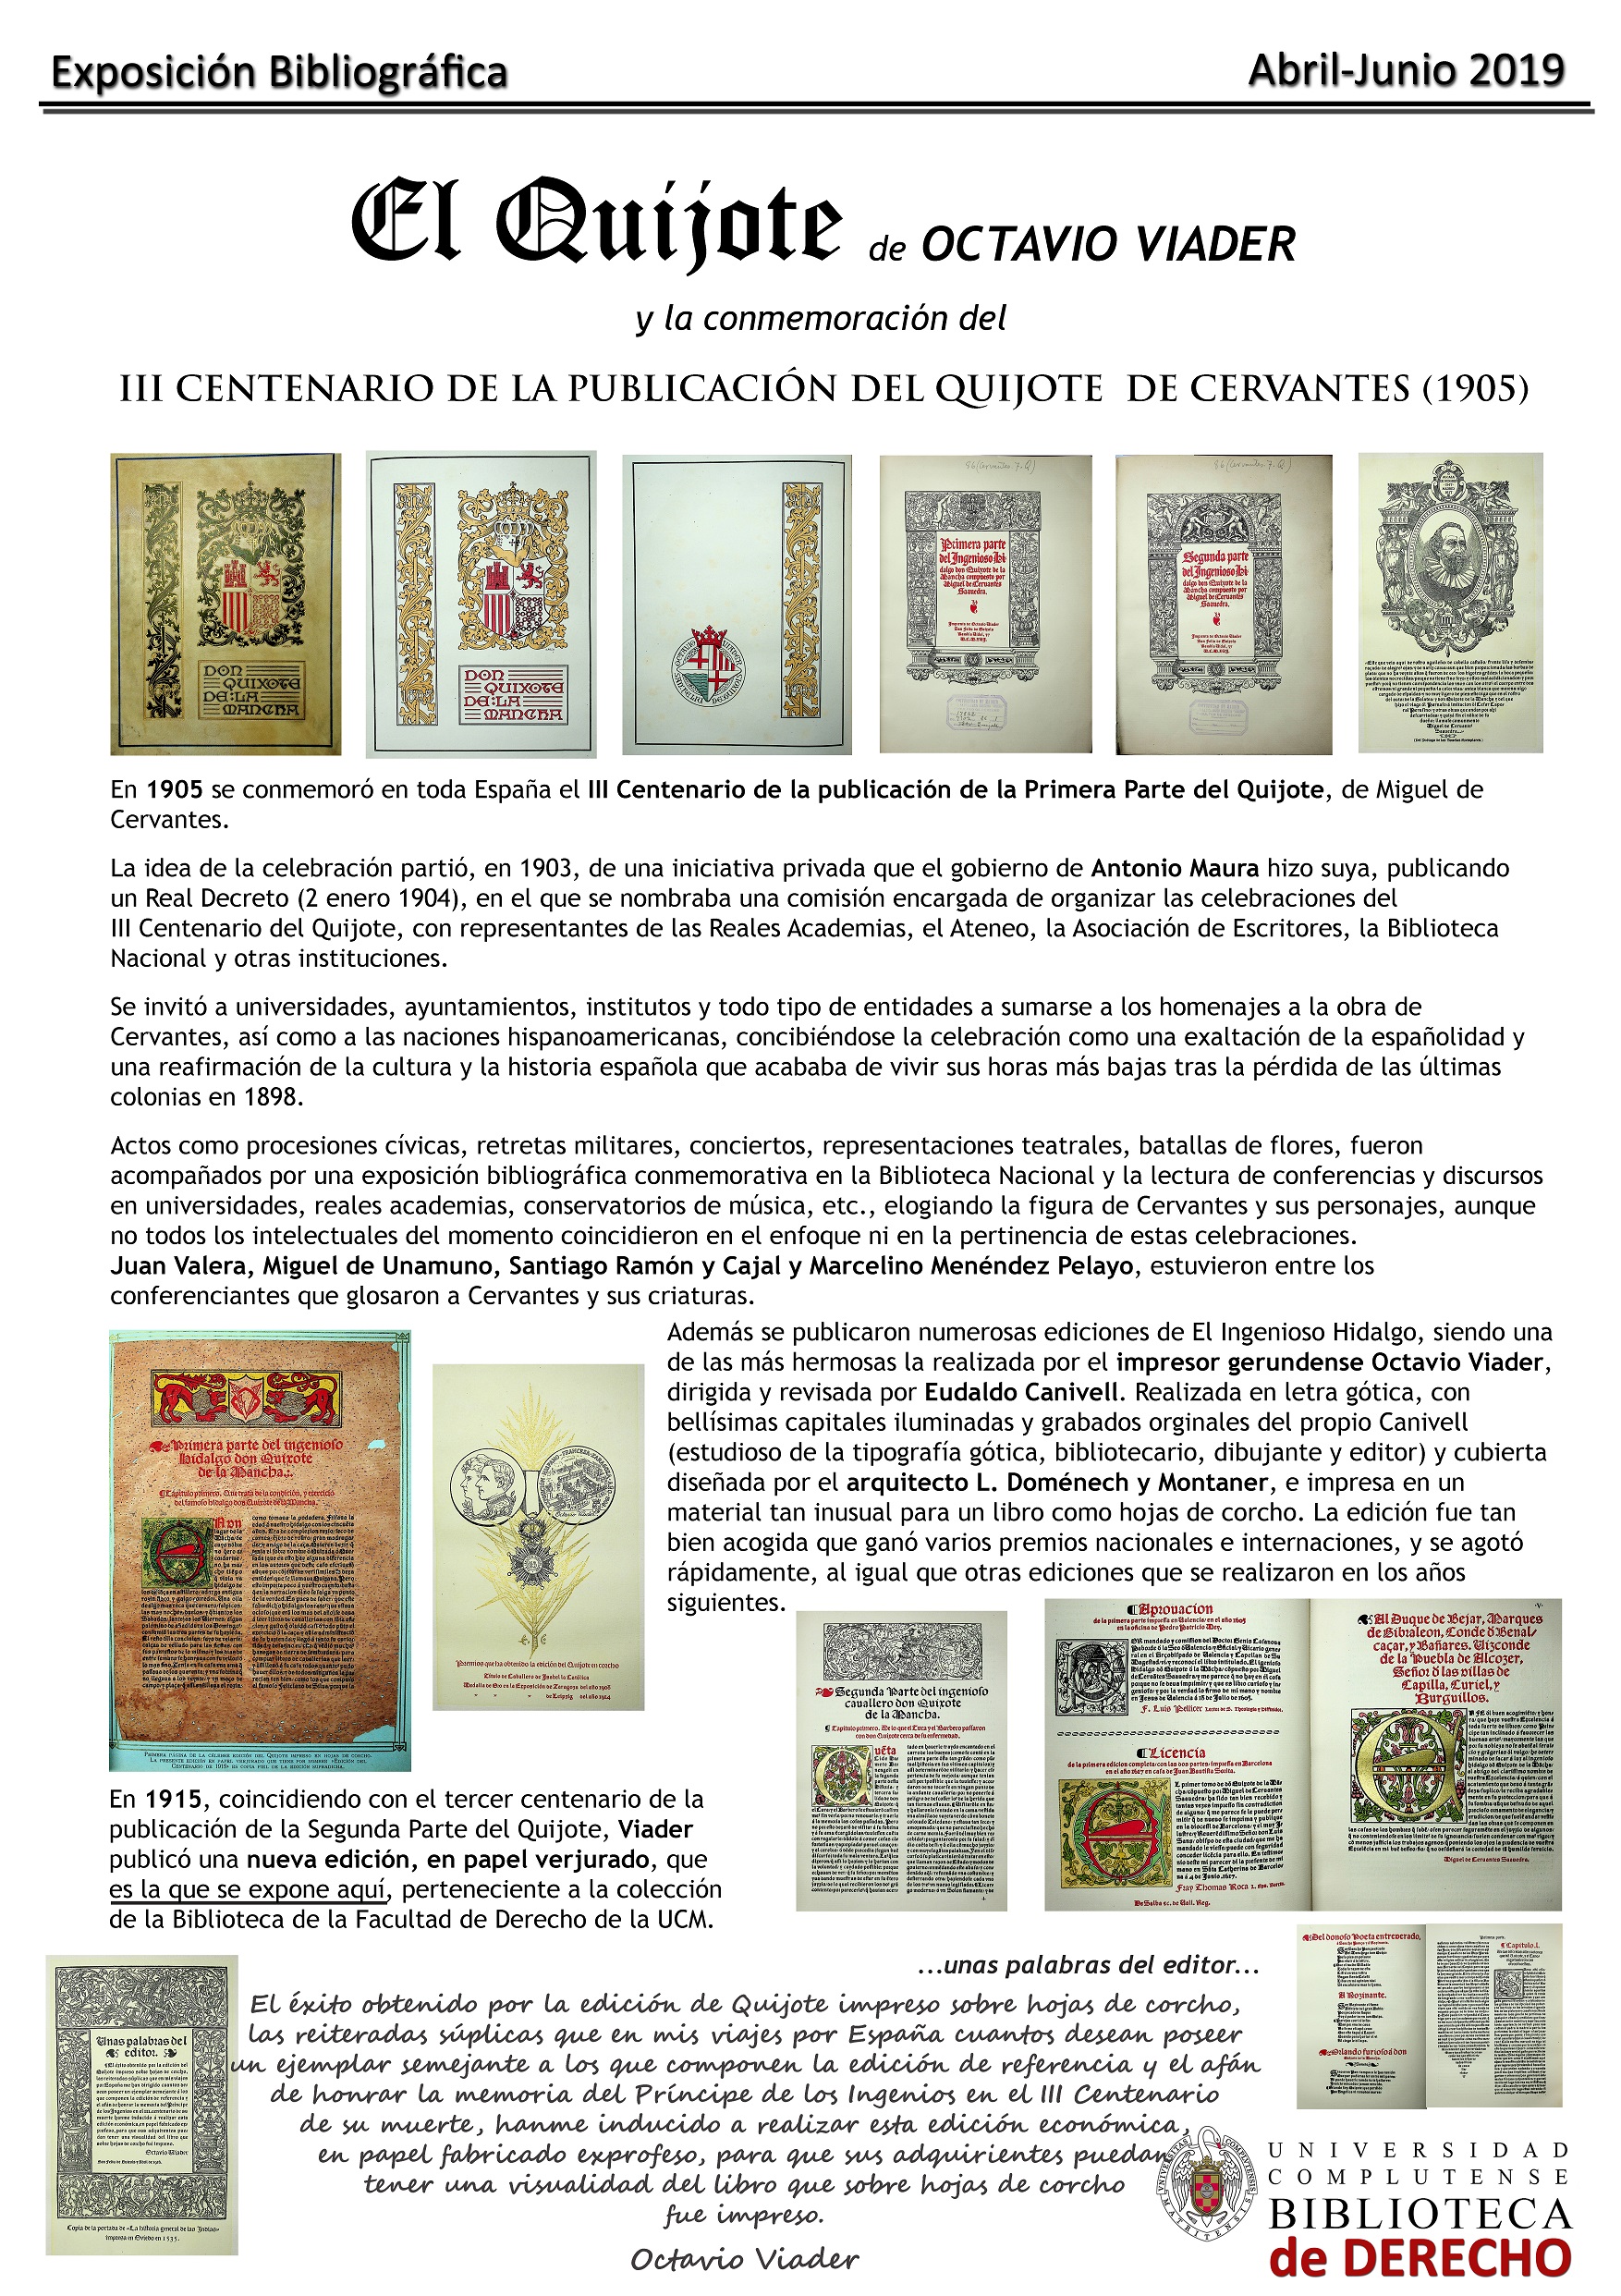 Exposición de El Quijote (edición de Octavio Viader)